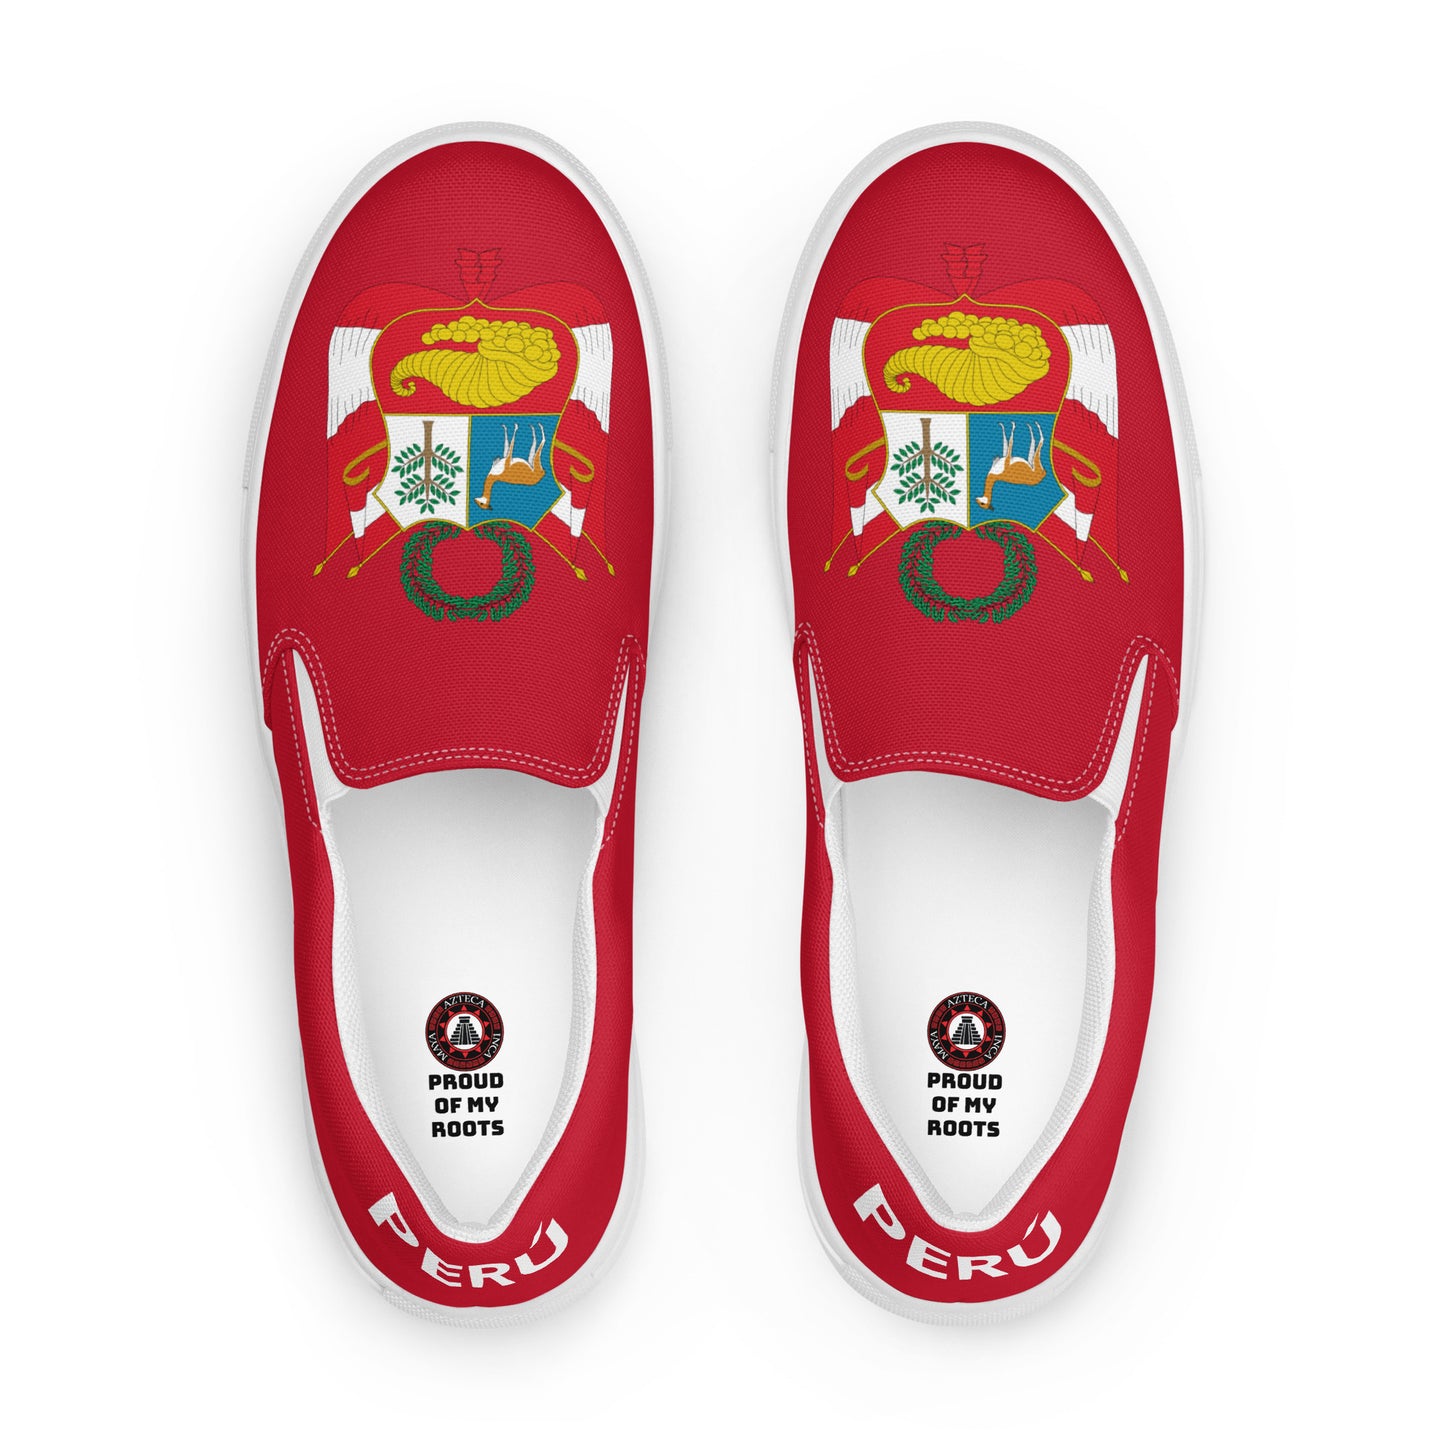 Perú - Men - Red - Slip-on shoes